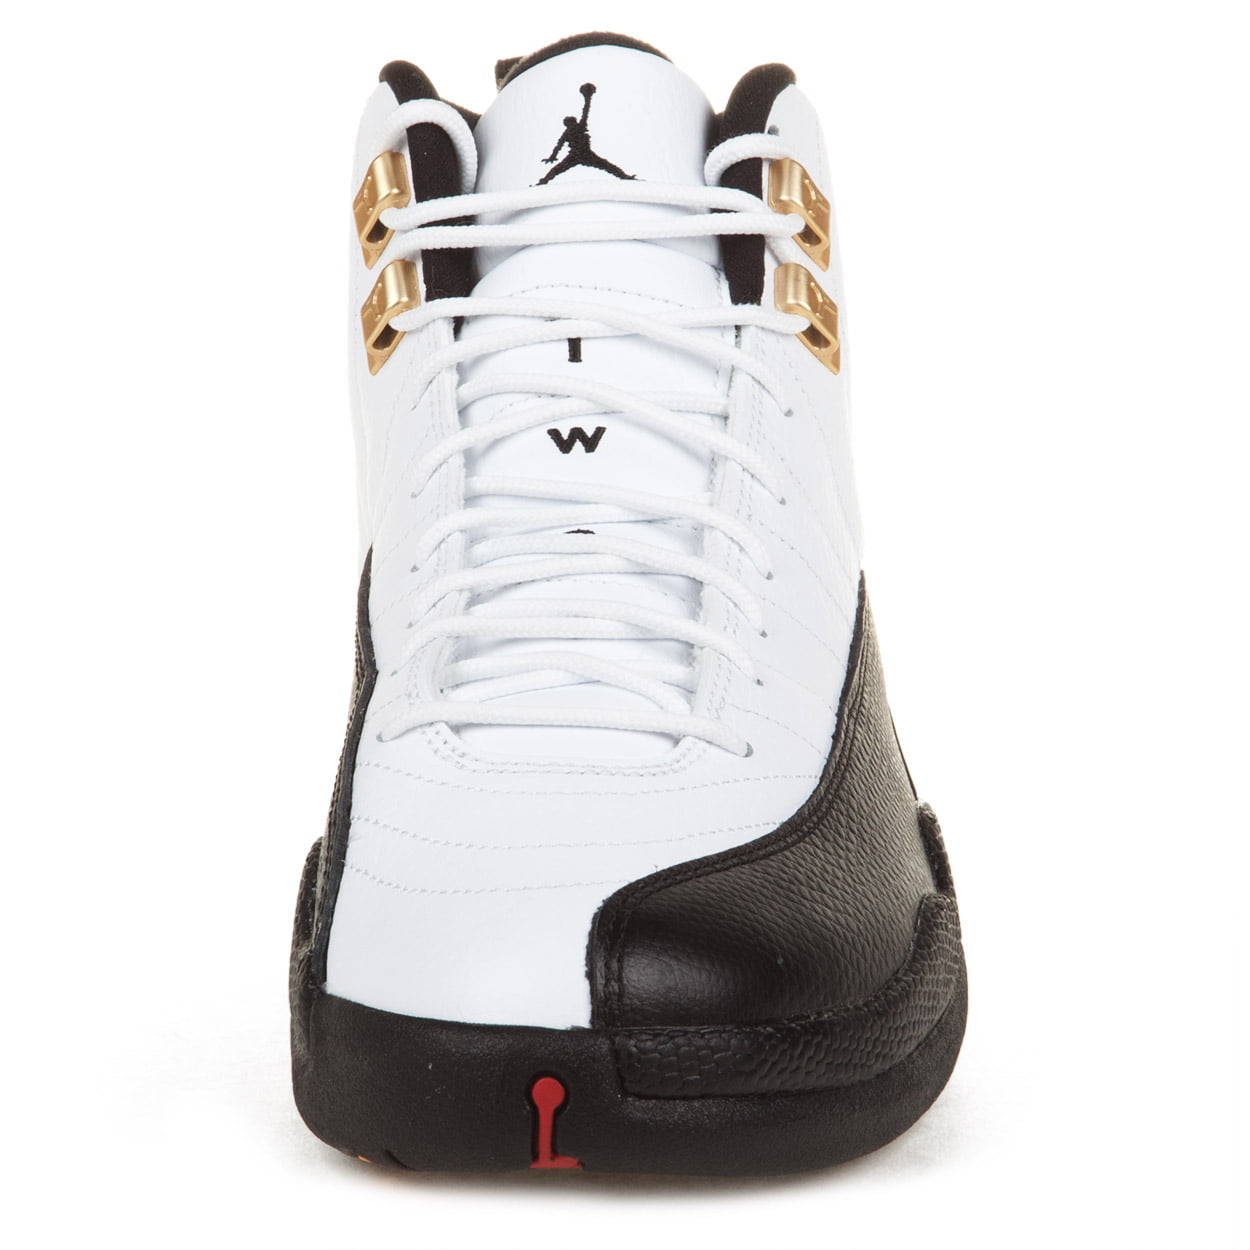 DS 1997 OG Nike Air Jordan 12 Taxi 130690-101 Vintage White/Black Size 12